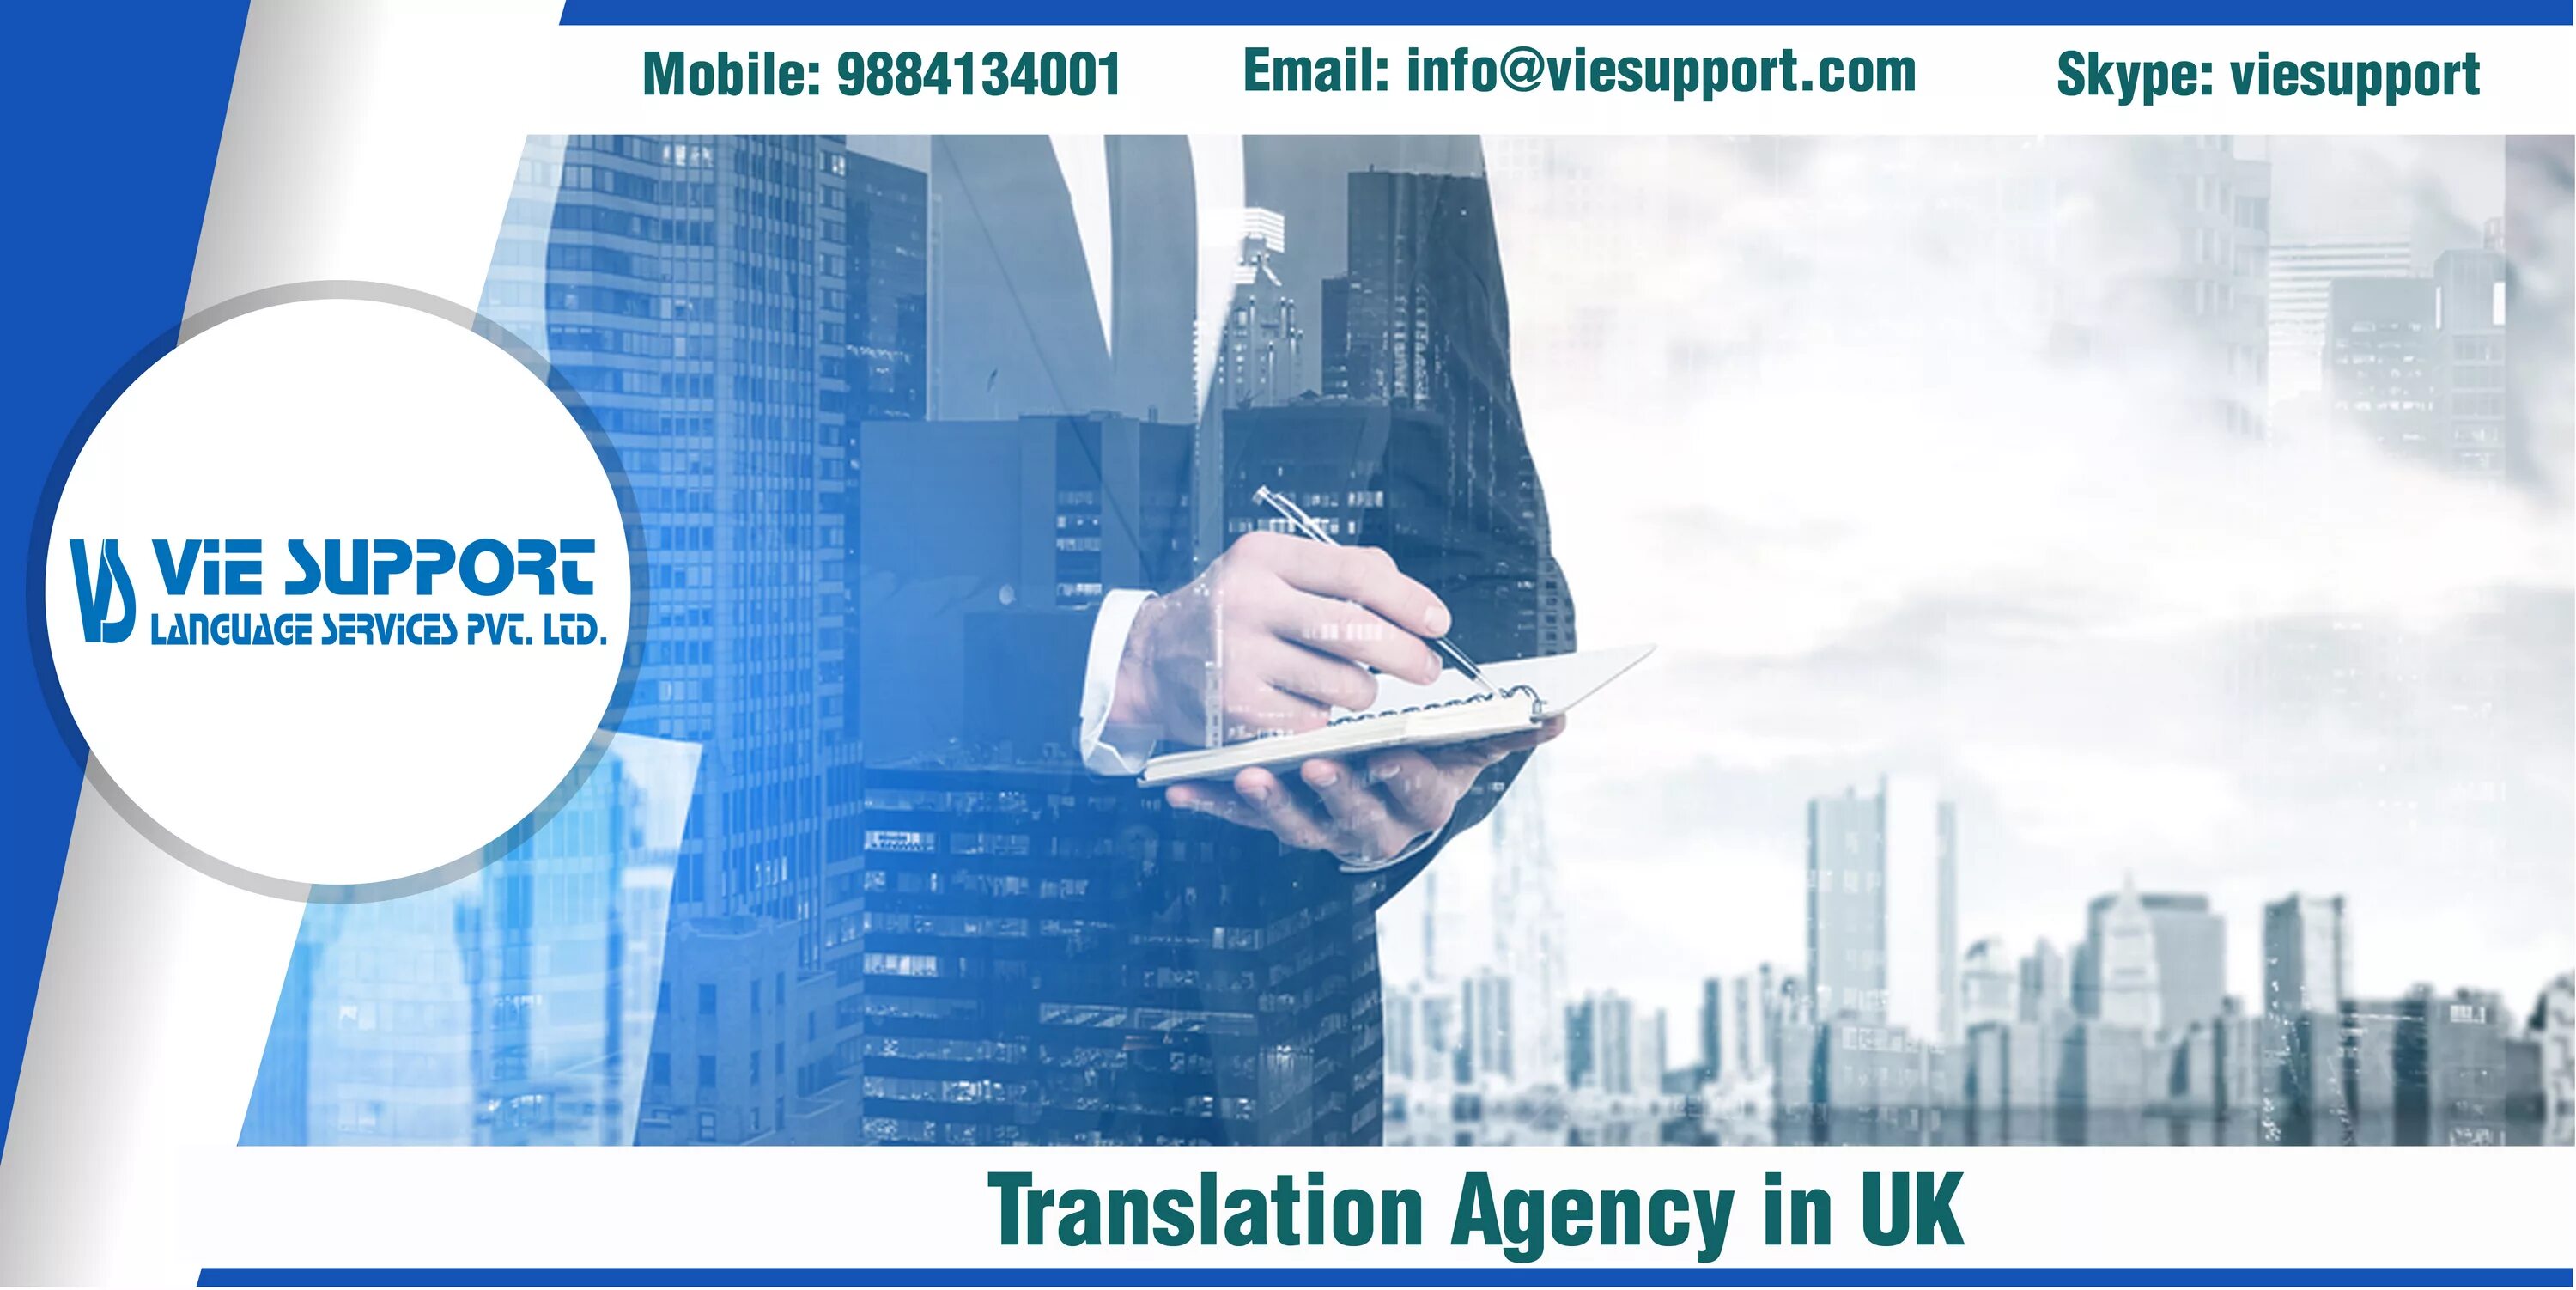 Agency перевод. Translate Agency. Translation Agency logo. Translation Agency website. Translation Agency in uk.